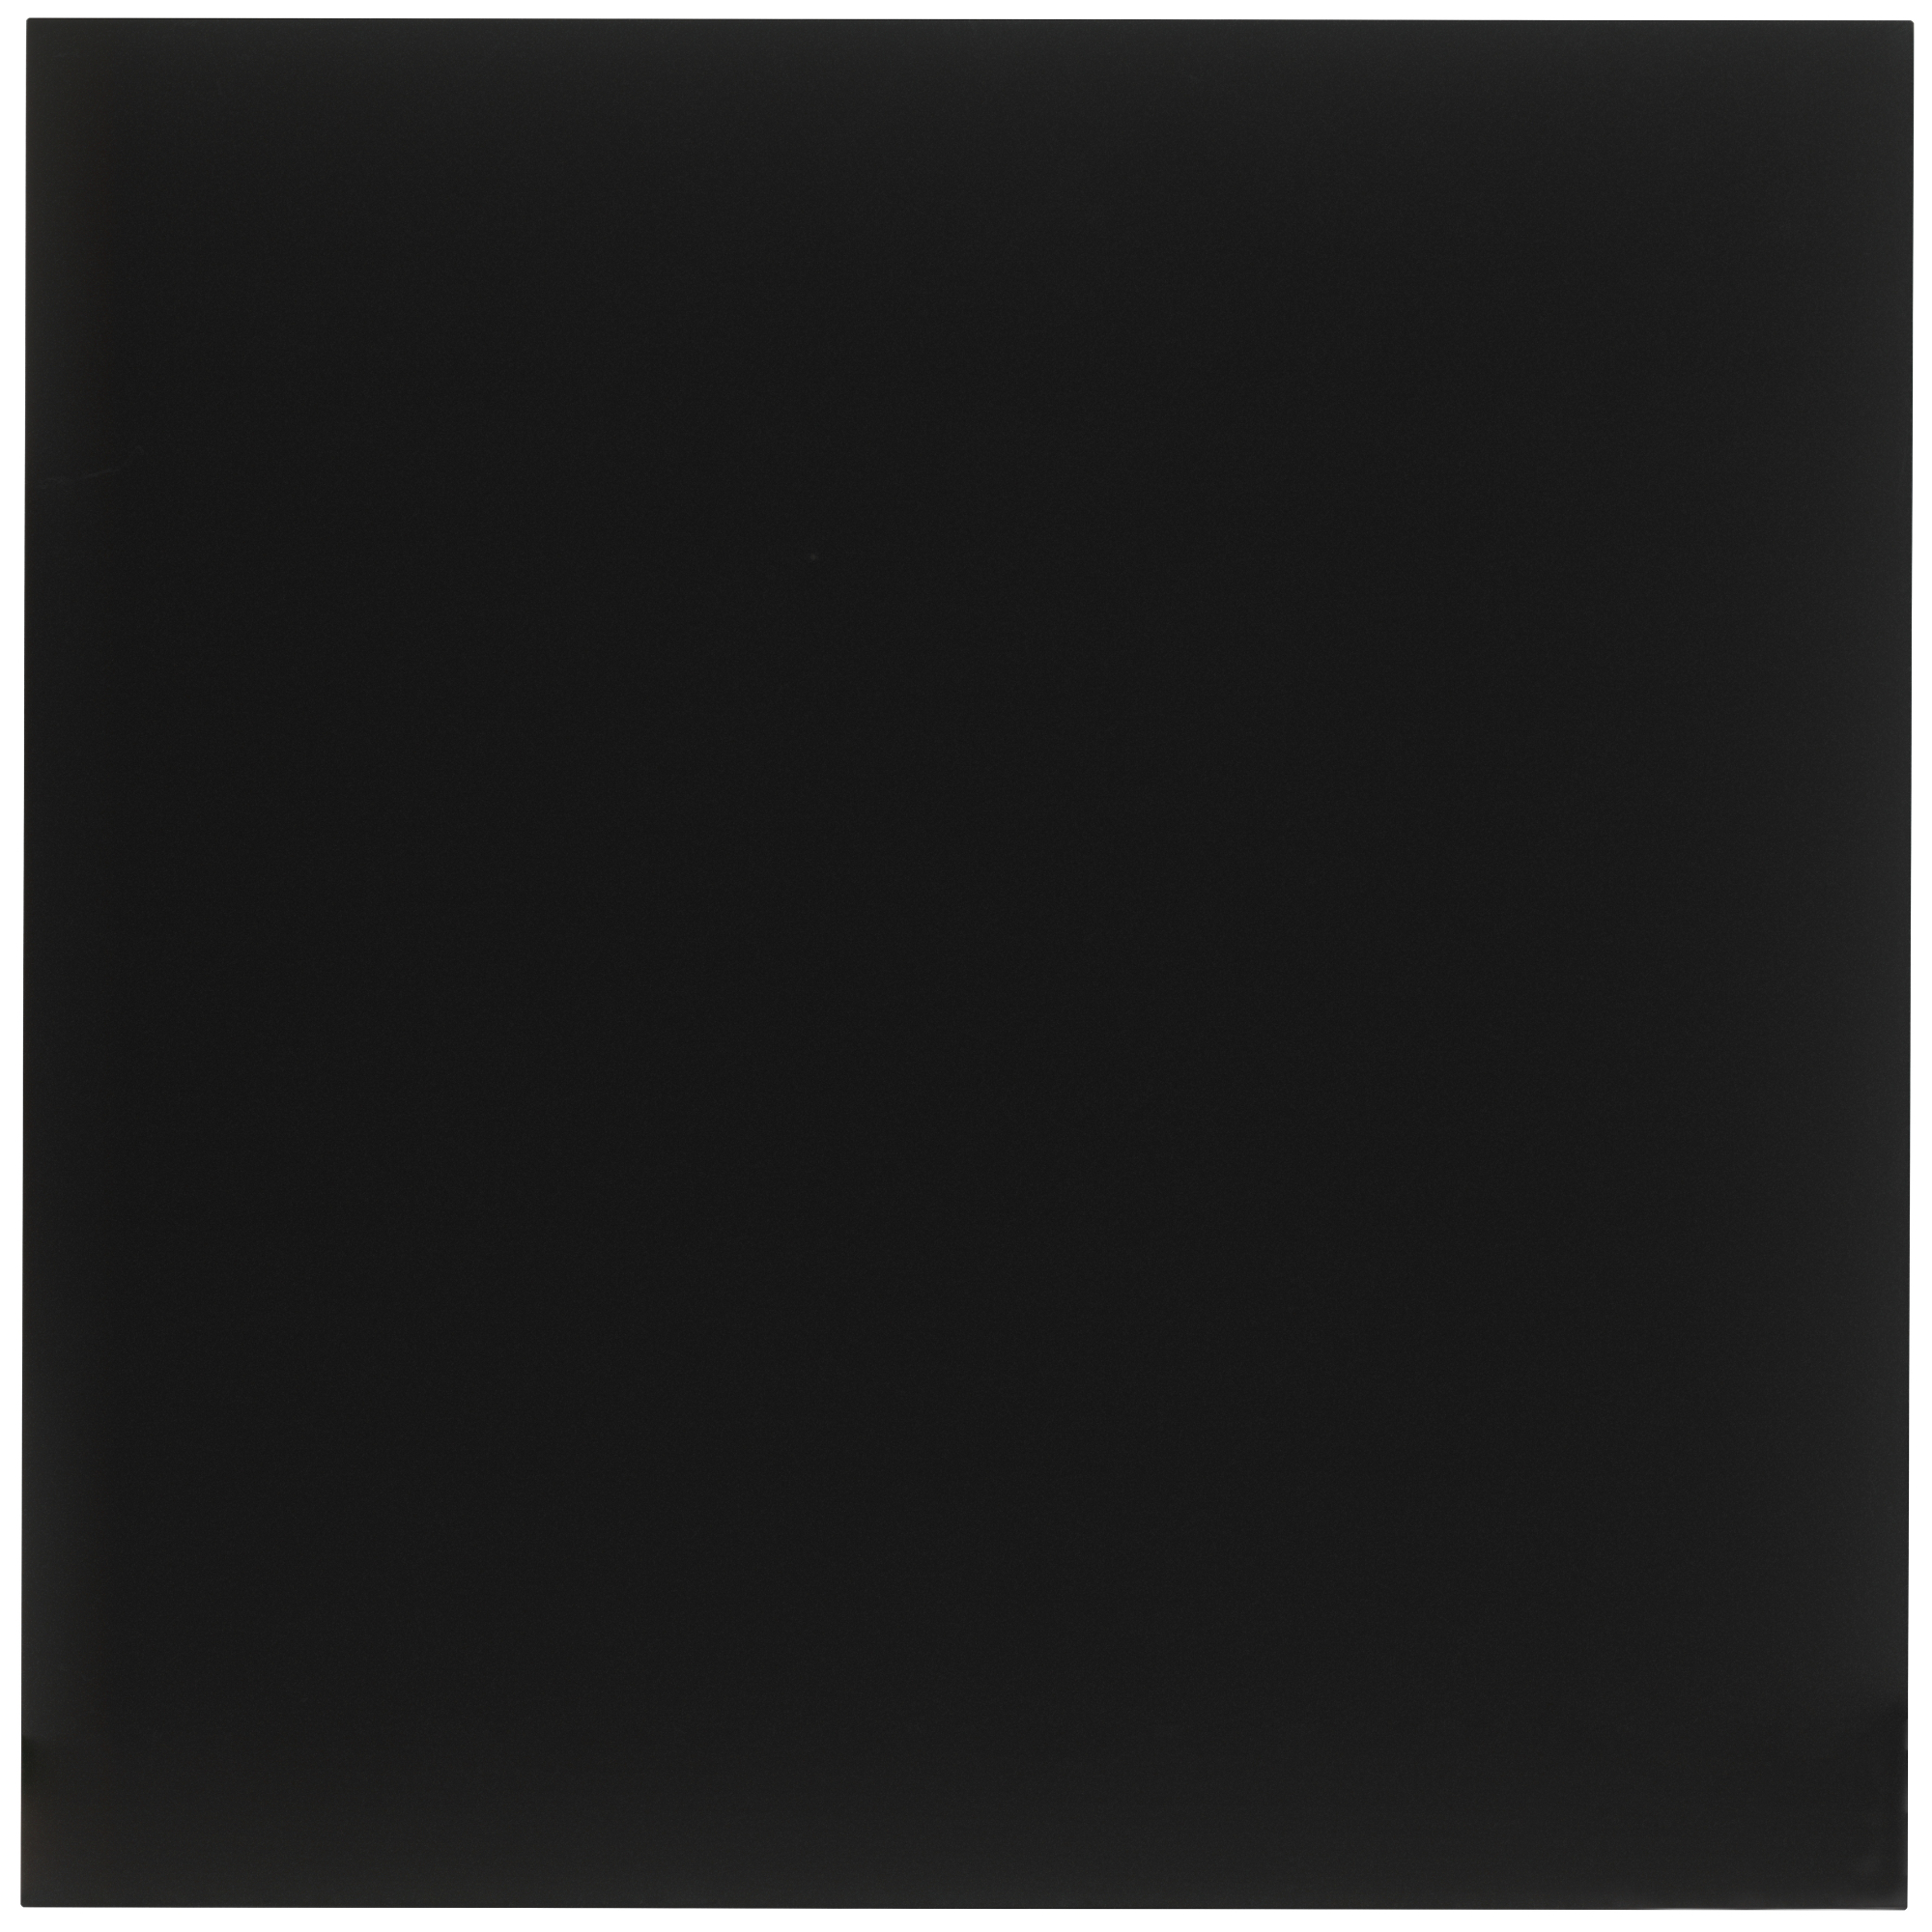 Colorgloss Black 59x59cm